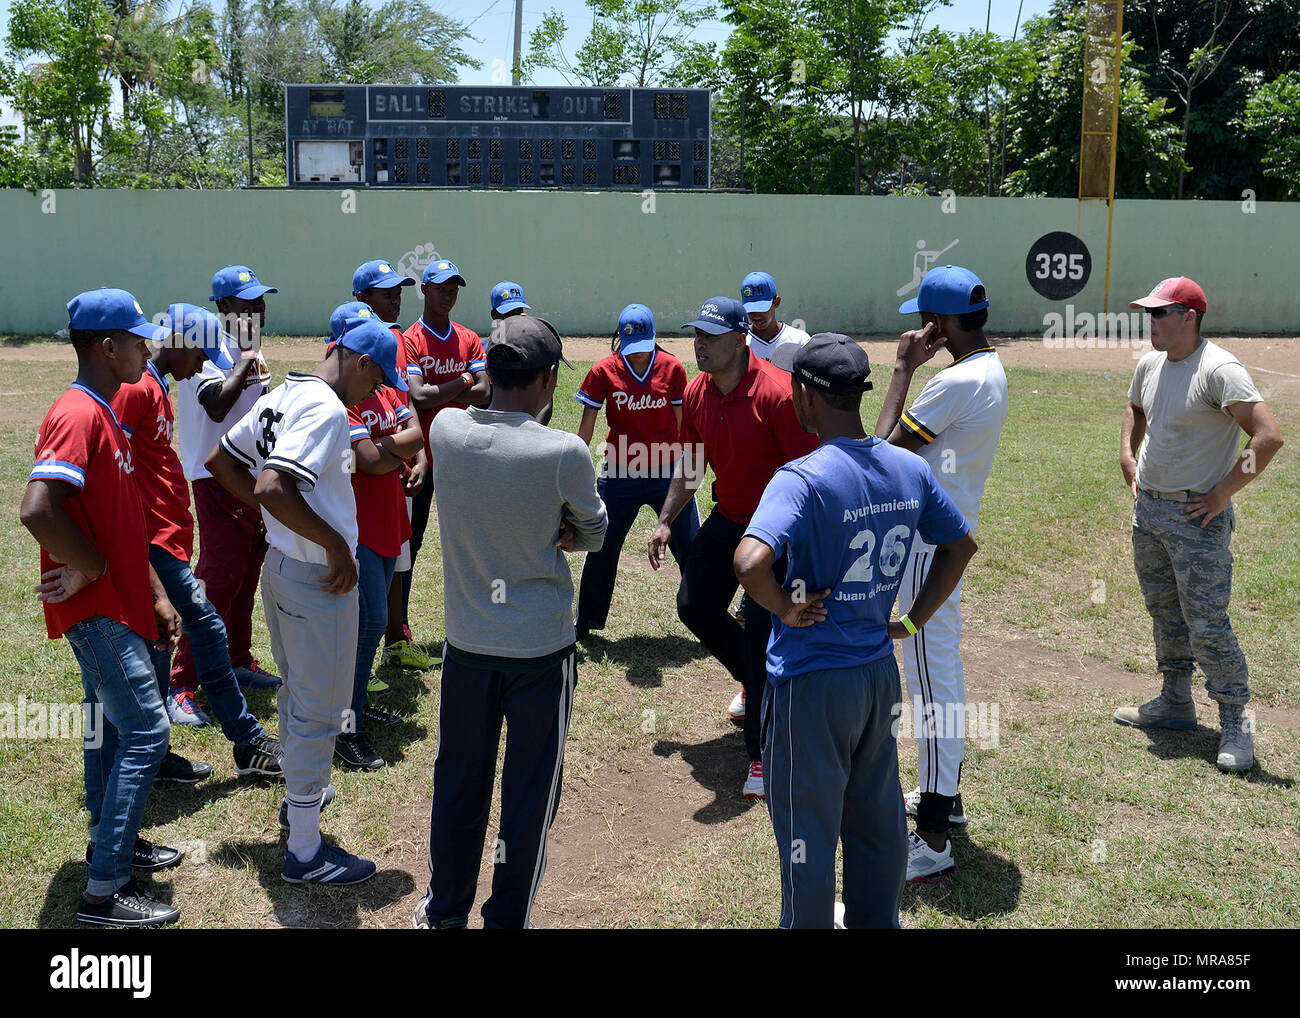 Miguel Descartes Batista Jerez, ein pensionierter Major League Baseball spieler aus der Dominikanischen Republik, Trainer die Teilnehmer auf ordnungsgemäße fielding Techniken während ein Baseball Clinic die task force Hosted für Bereich Kinder Mai 20, 2017, in San Juan de la Maguana, der Dominikanischen Republik, als Teil der neuen Horizonte 2017. Der baseball Clinic, die von der Task Force in Zusammenarbeit mit verschiedenen Nichtregierungsorganisationen und anderen Organisationen organisiert, bot US-Mitglieder die Möglichkeit, ehemalige Major League Baseball Spieler und Trainer auf ein denkwürdiges Ereignis für 450 Kinder, Eltern und andere p zu unterstützen. Stockfoto